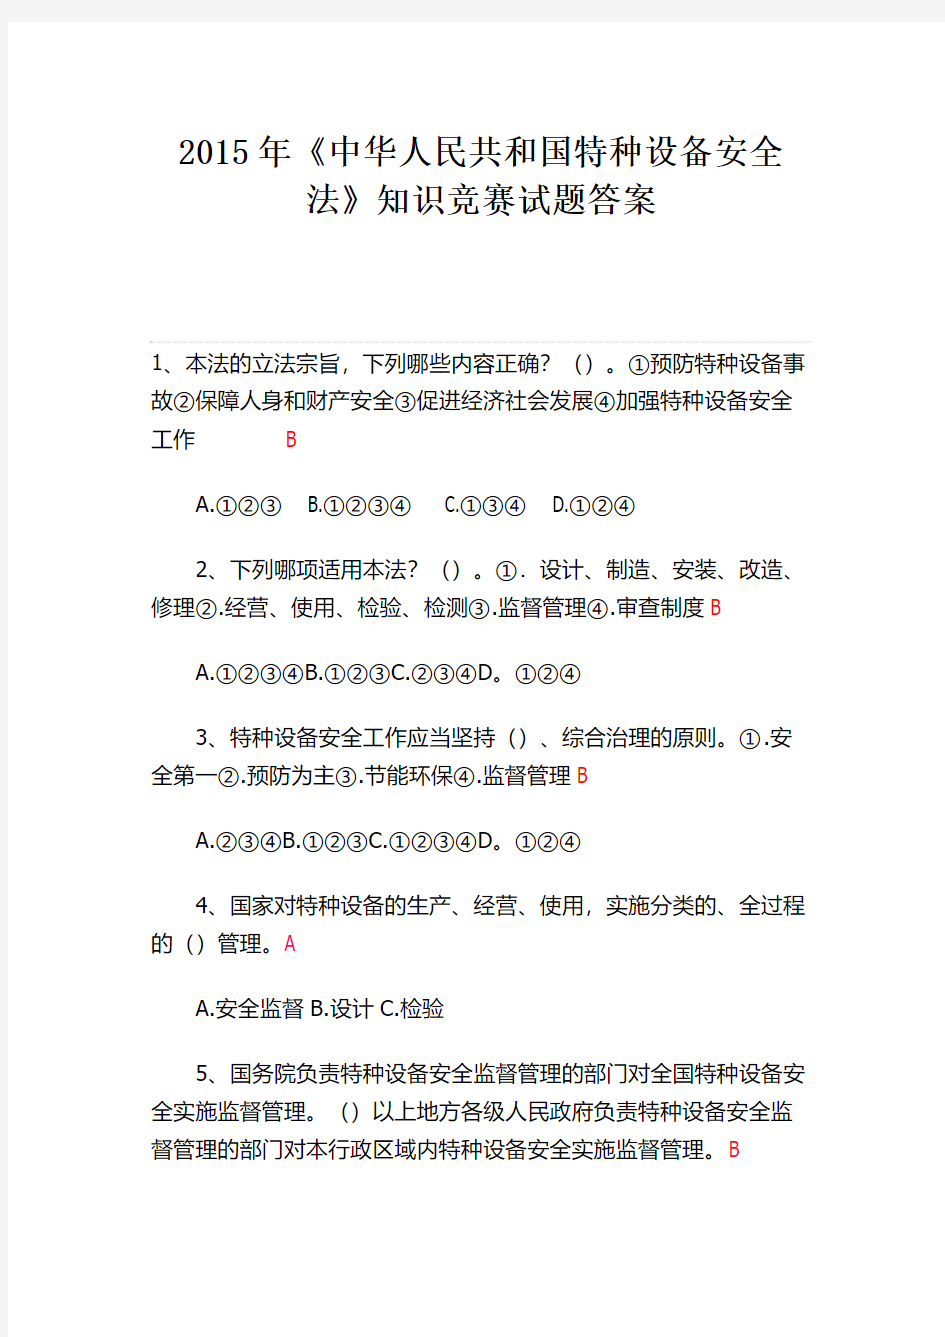 2015年《中华人民共和国特种设备安全法》知识竞赛试题答案